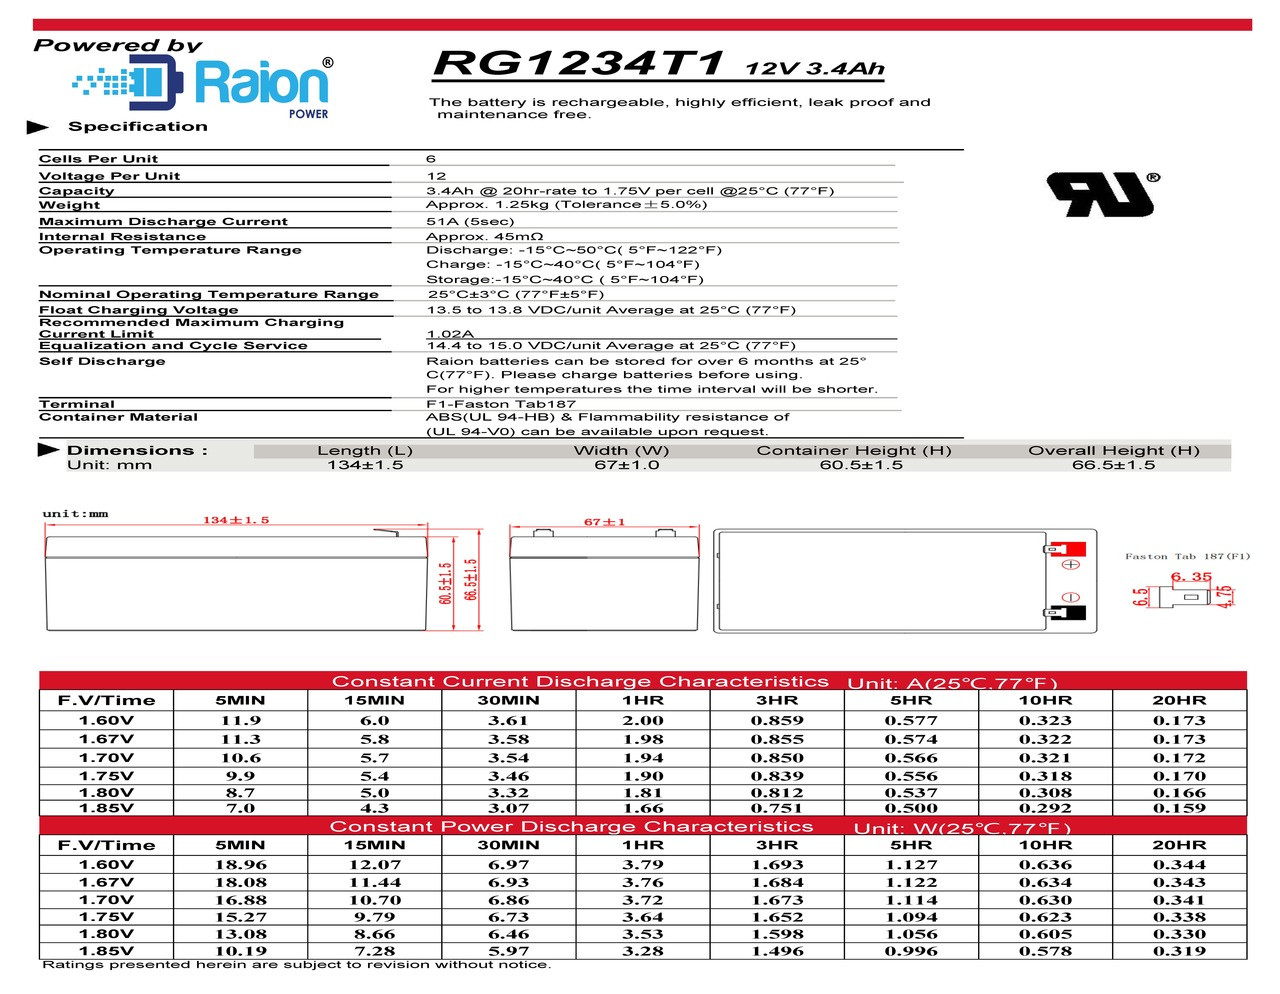 Raion Power RG1234T1 12V 3.4Ah Battery Data Sheet for Valen Topin 12 TP 3.3